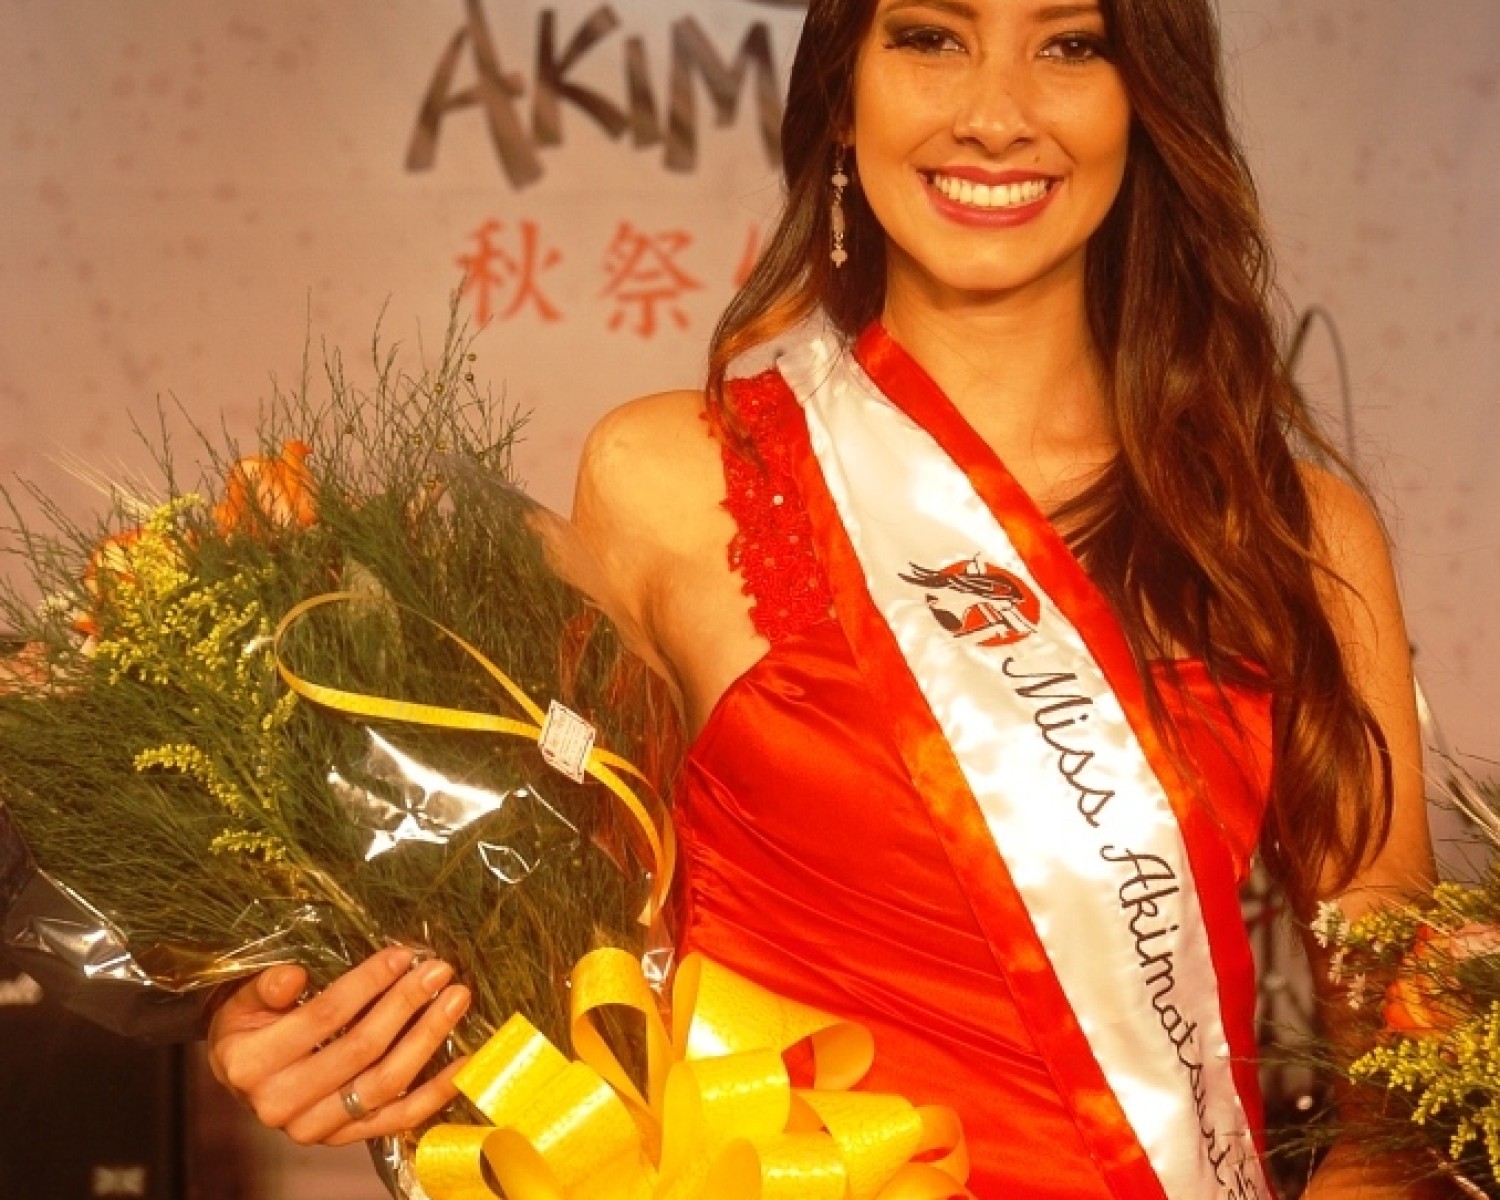 Img: Miss Akimatsuri 2015 se surpreende com repercussão de concurso